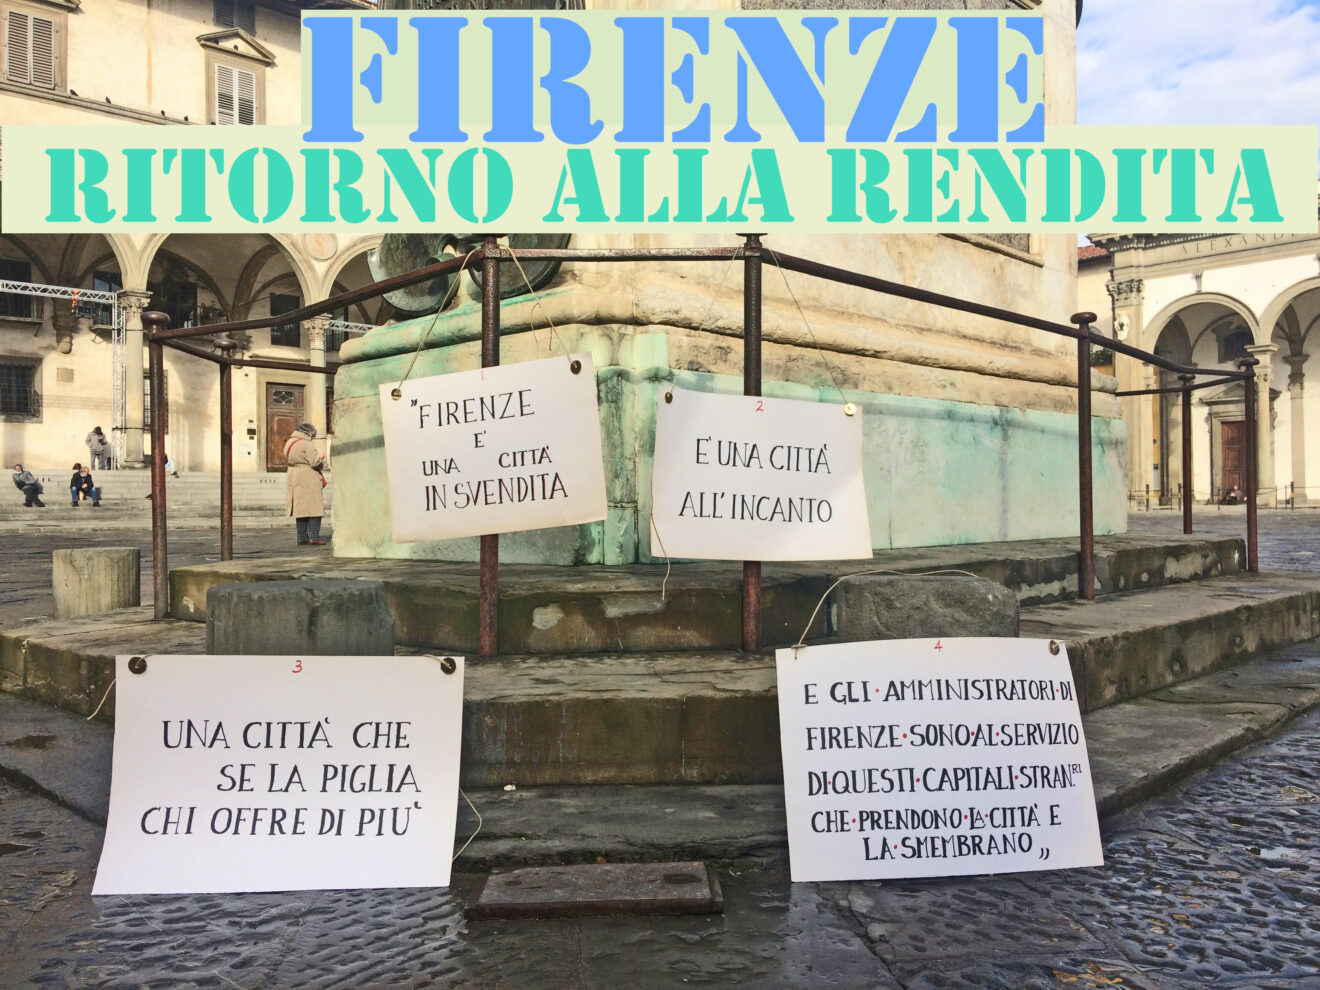 Firenze, ritorno alla rendita